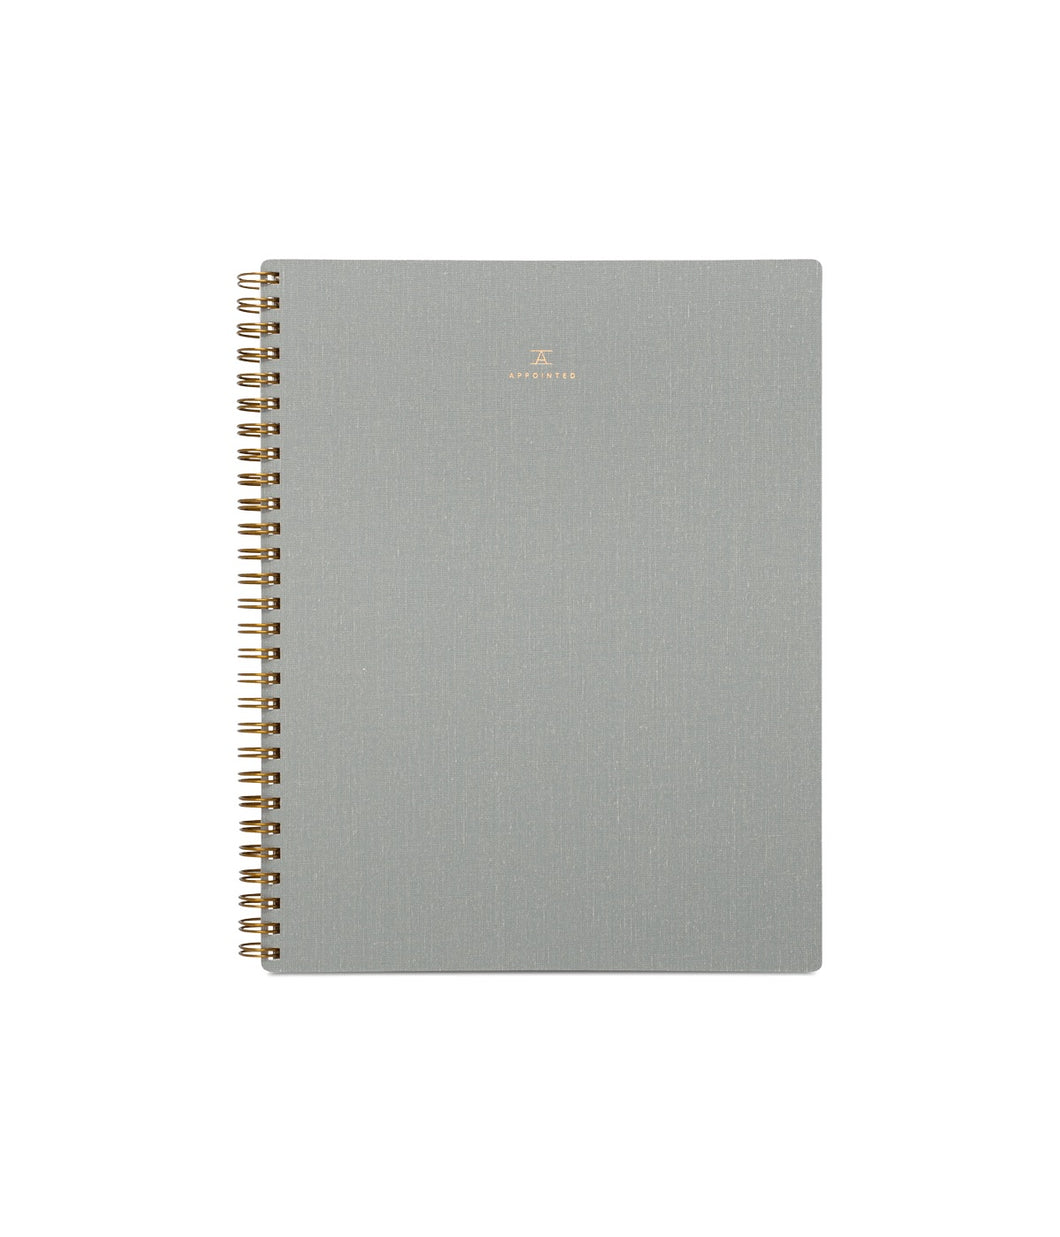 Dot grid notebook